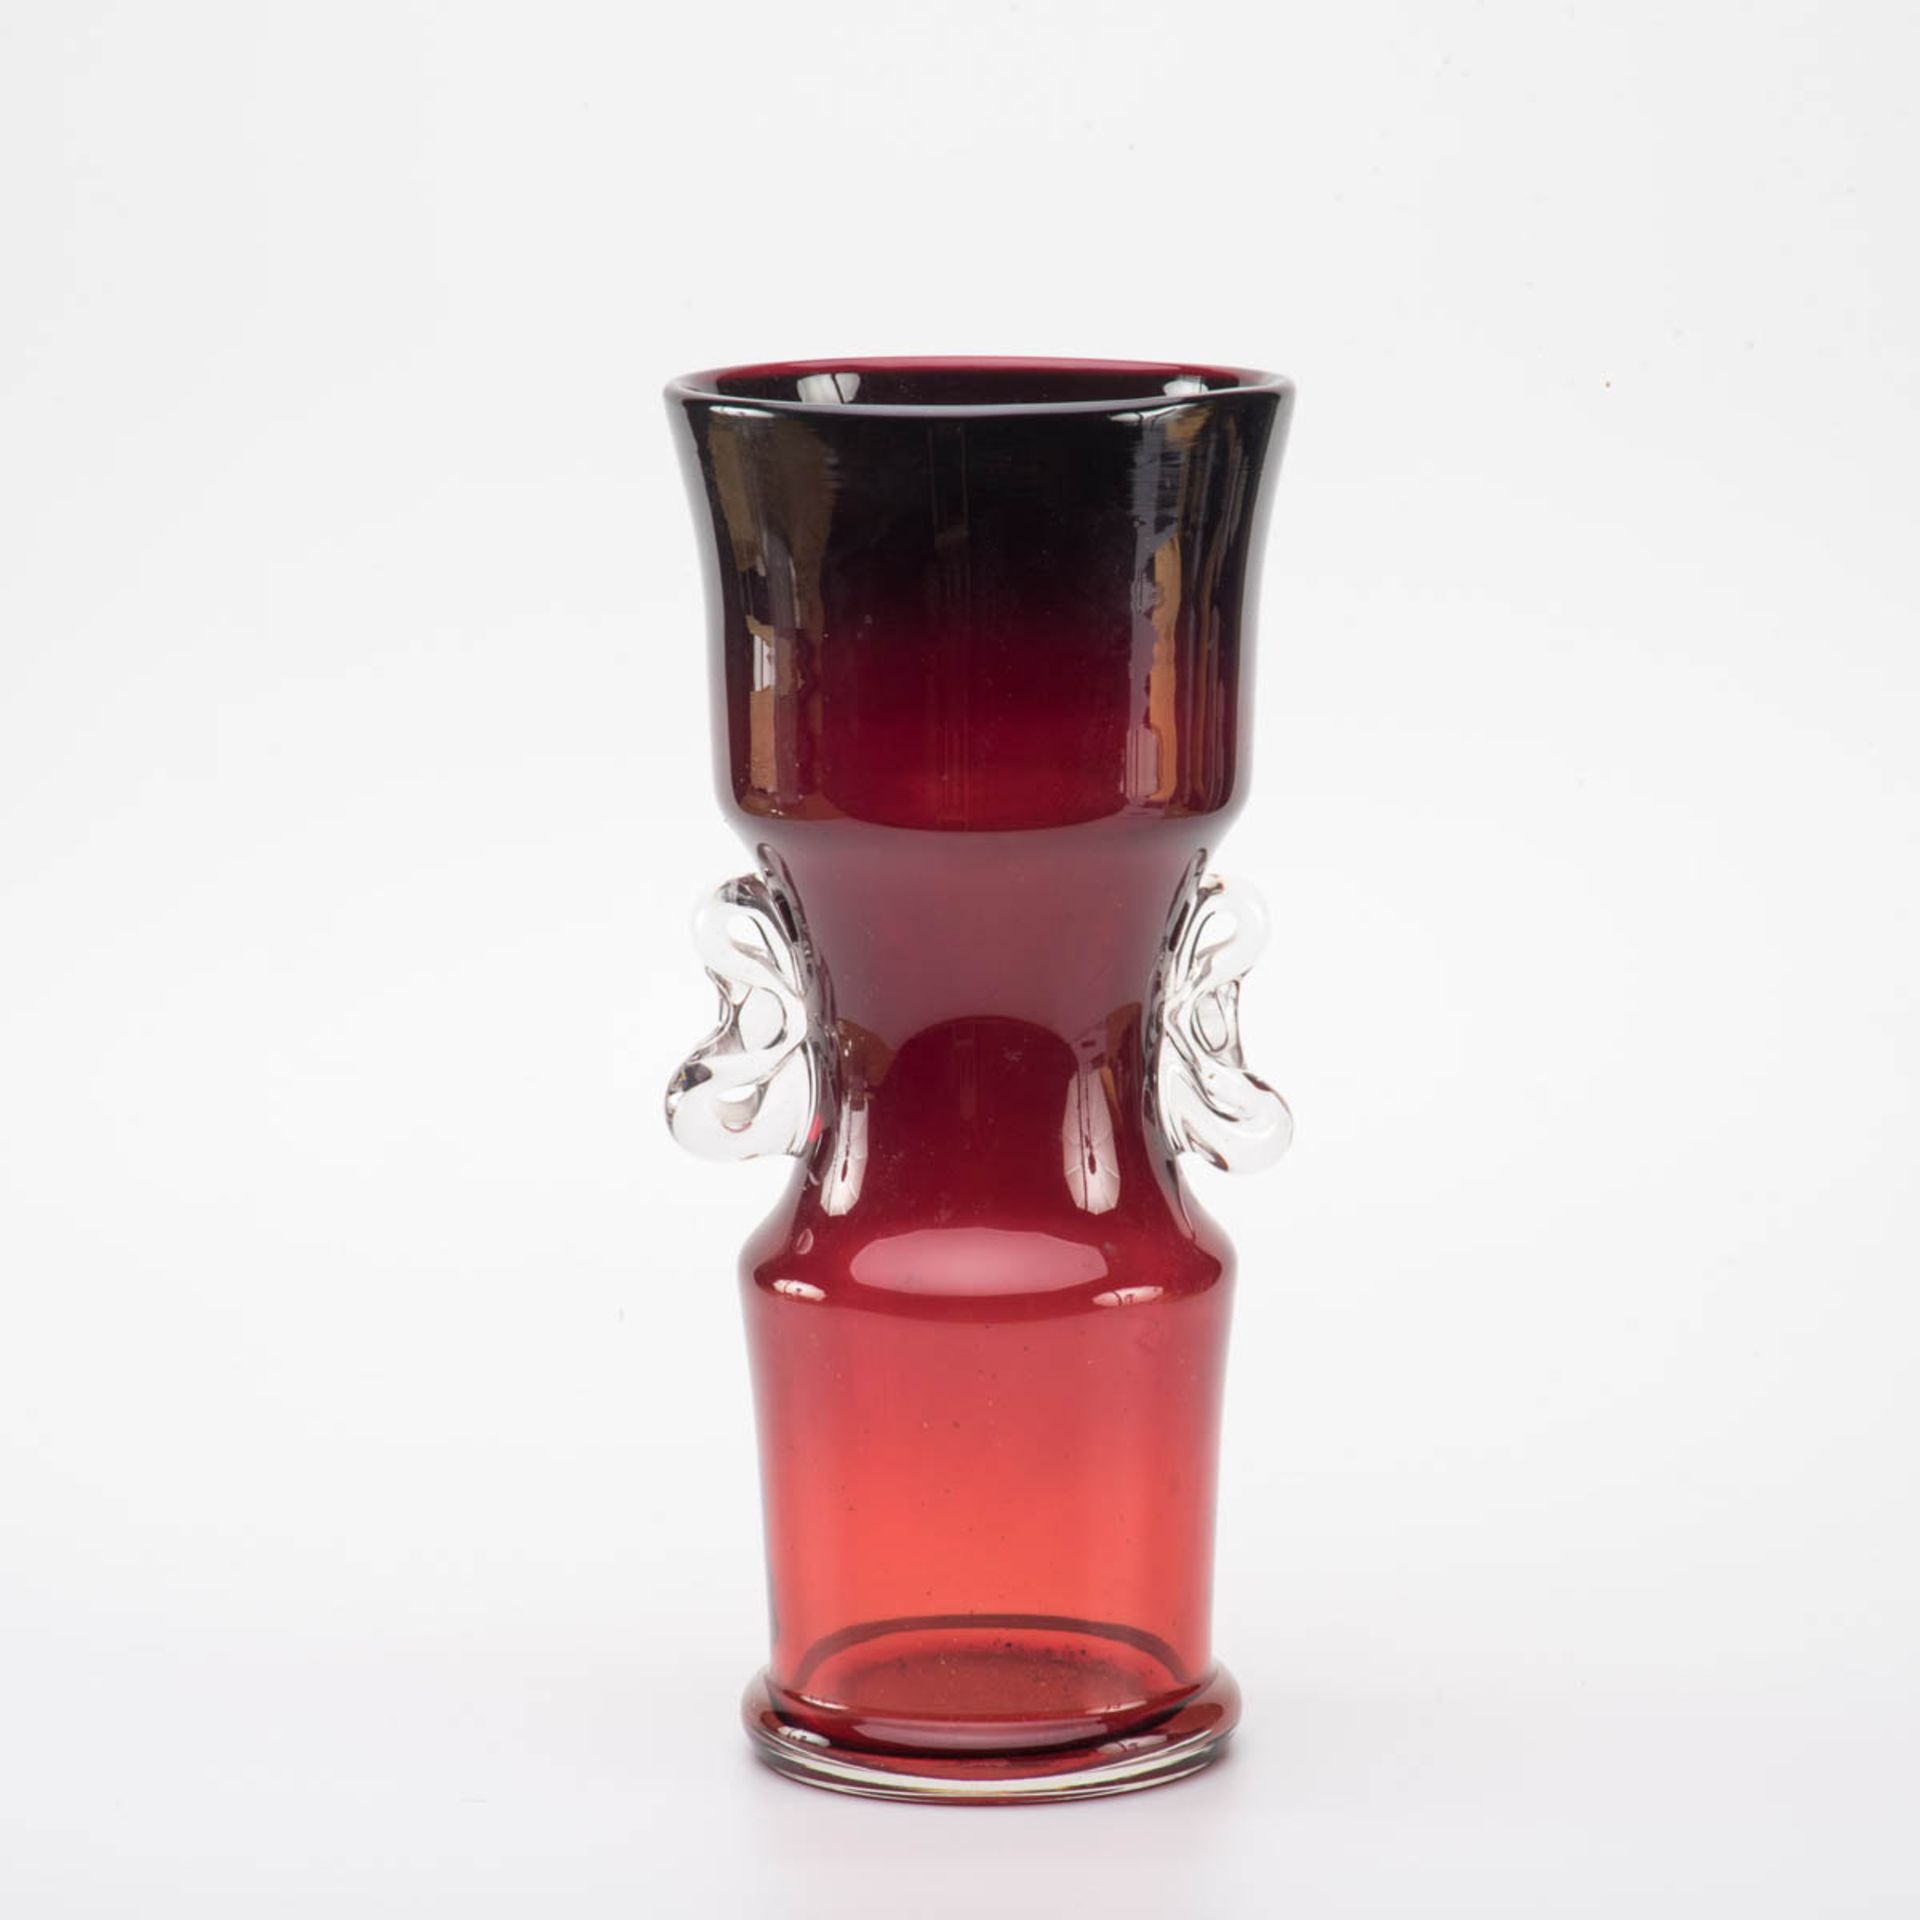 Ziervase, Böhmen um 1920 Farbloses Glas rot überfangen. Verkröpfter Standring. Korpus unten